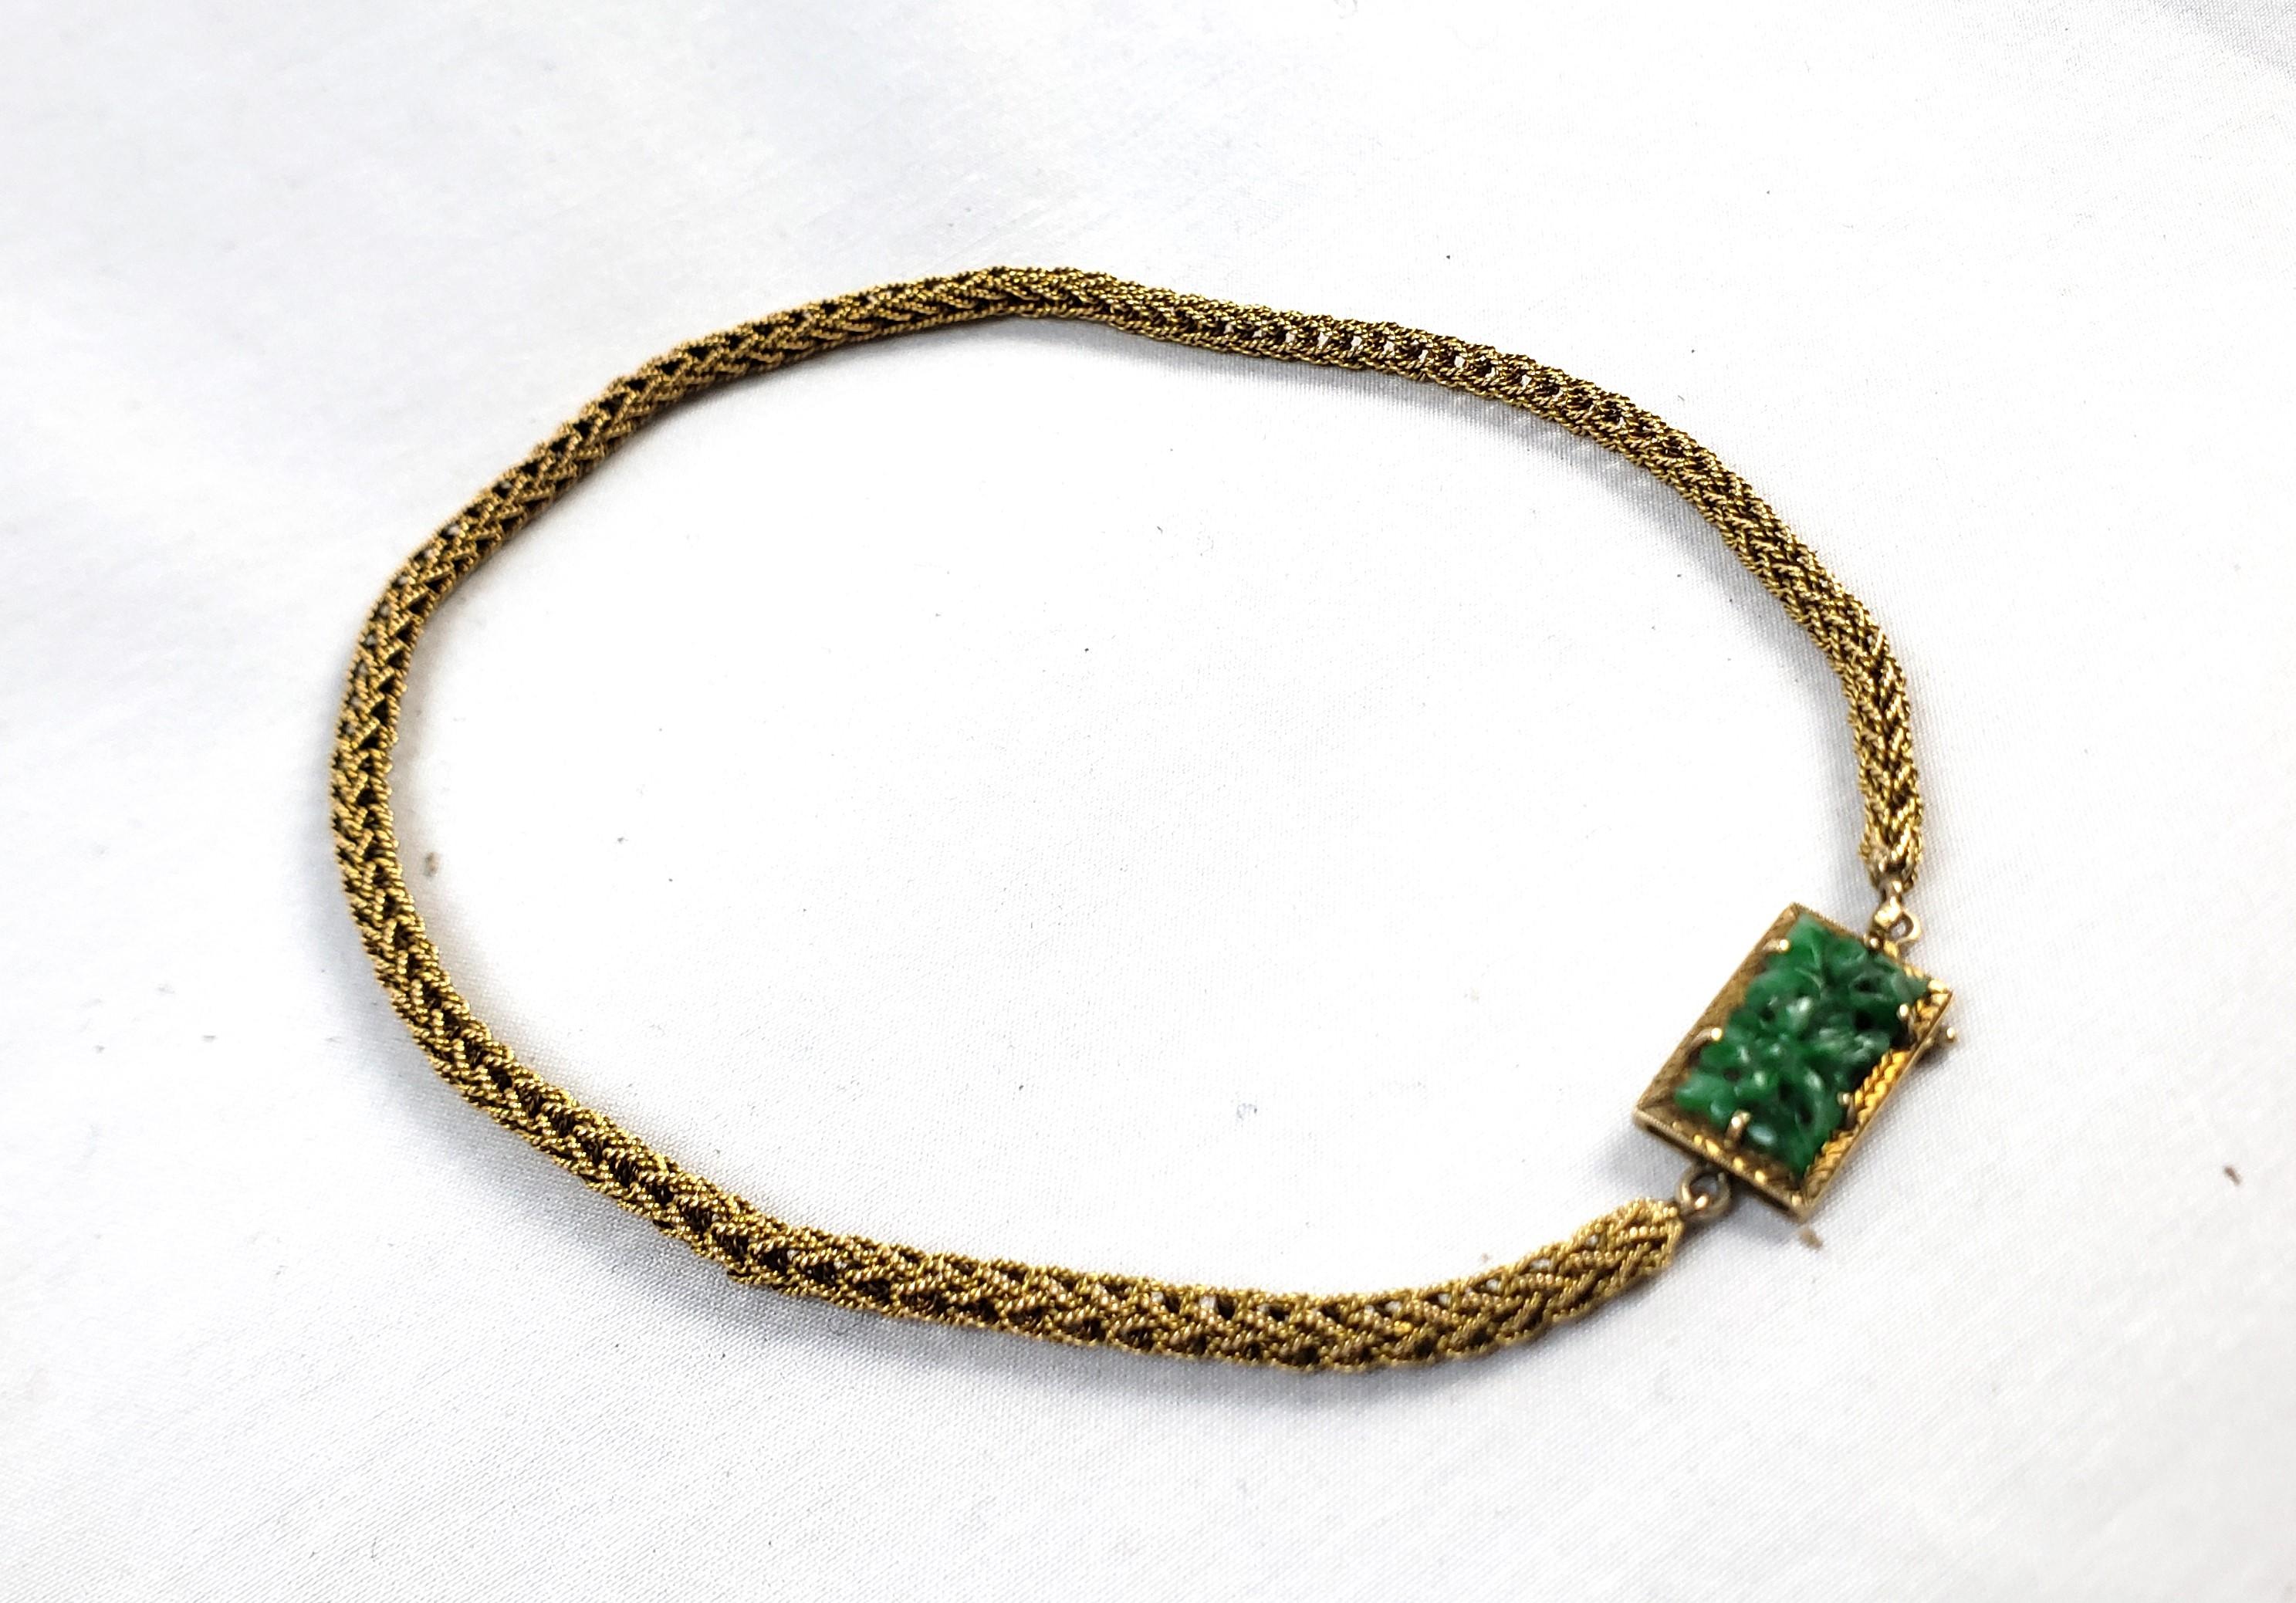 Ce collier ancien pour femme n'est ni signé ni marqué, mais date d'environ 1900. On suppose qu'il provient de Chine et qu'il a été réalisé dans un style Chinoiserie d'époque. Le collier est composé d'or jaune 14 carats, d'une chaîne de robe épaisse